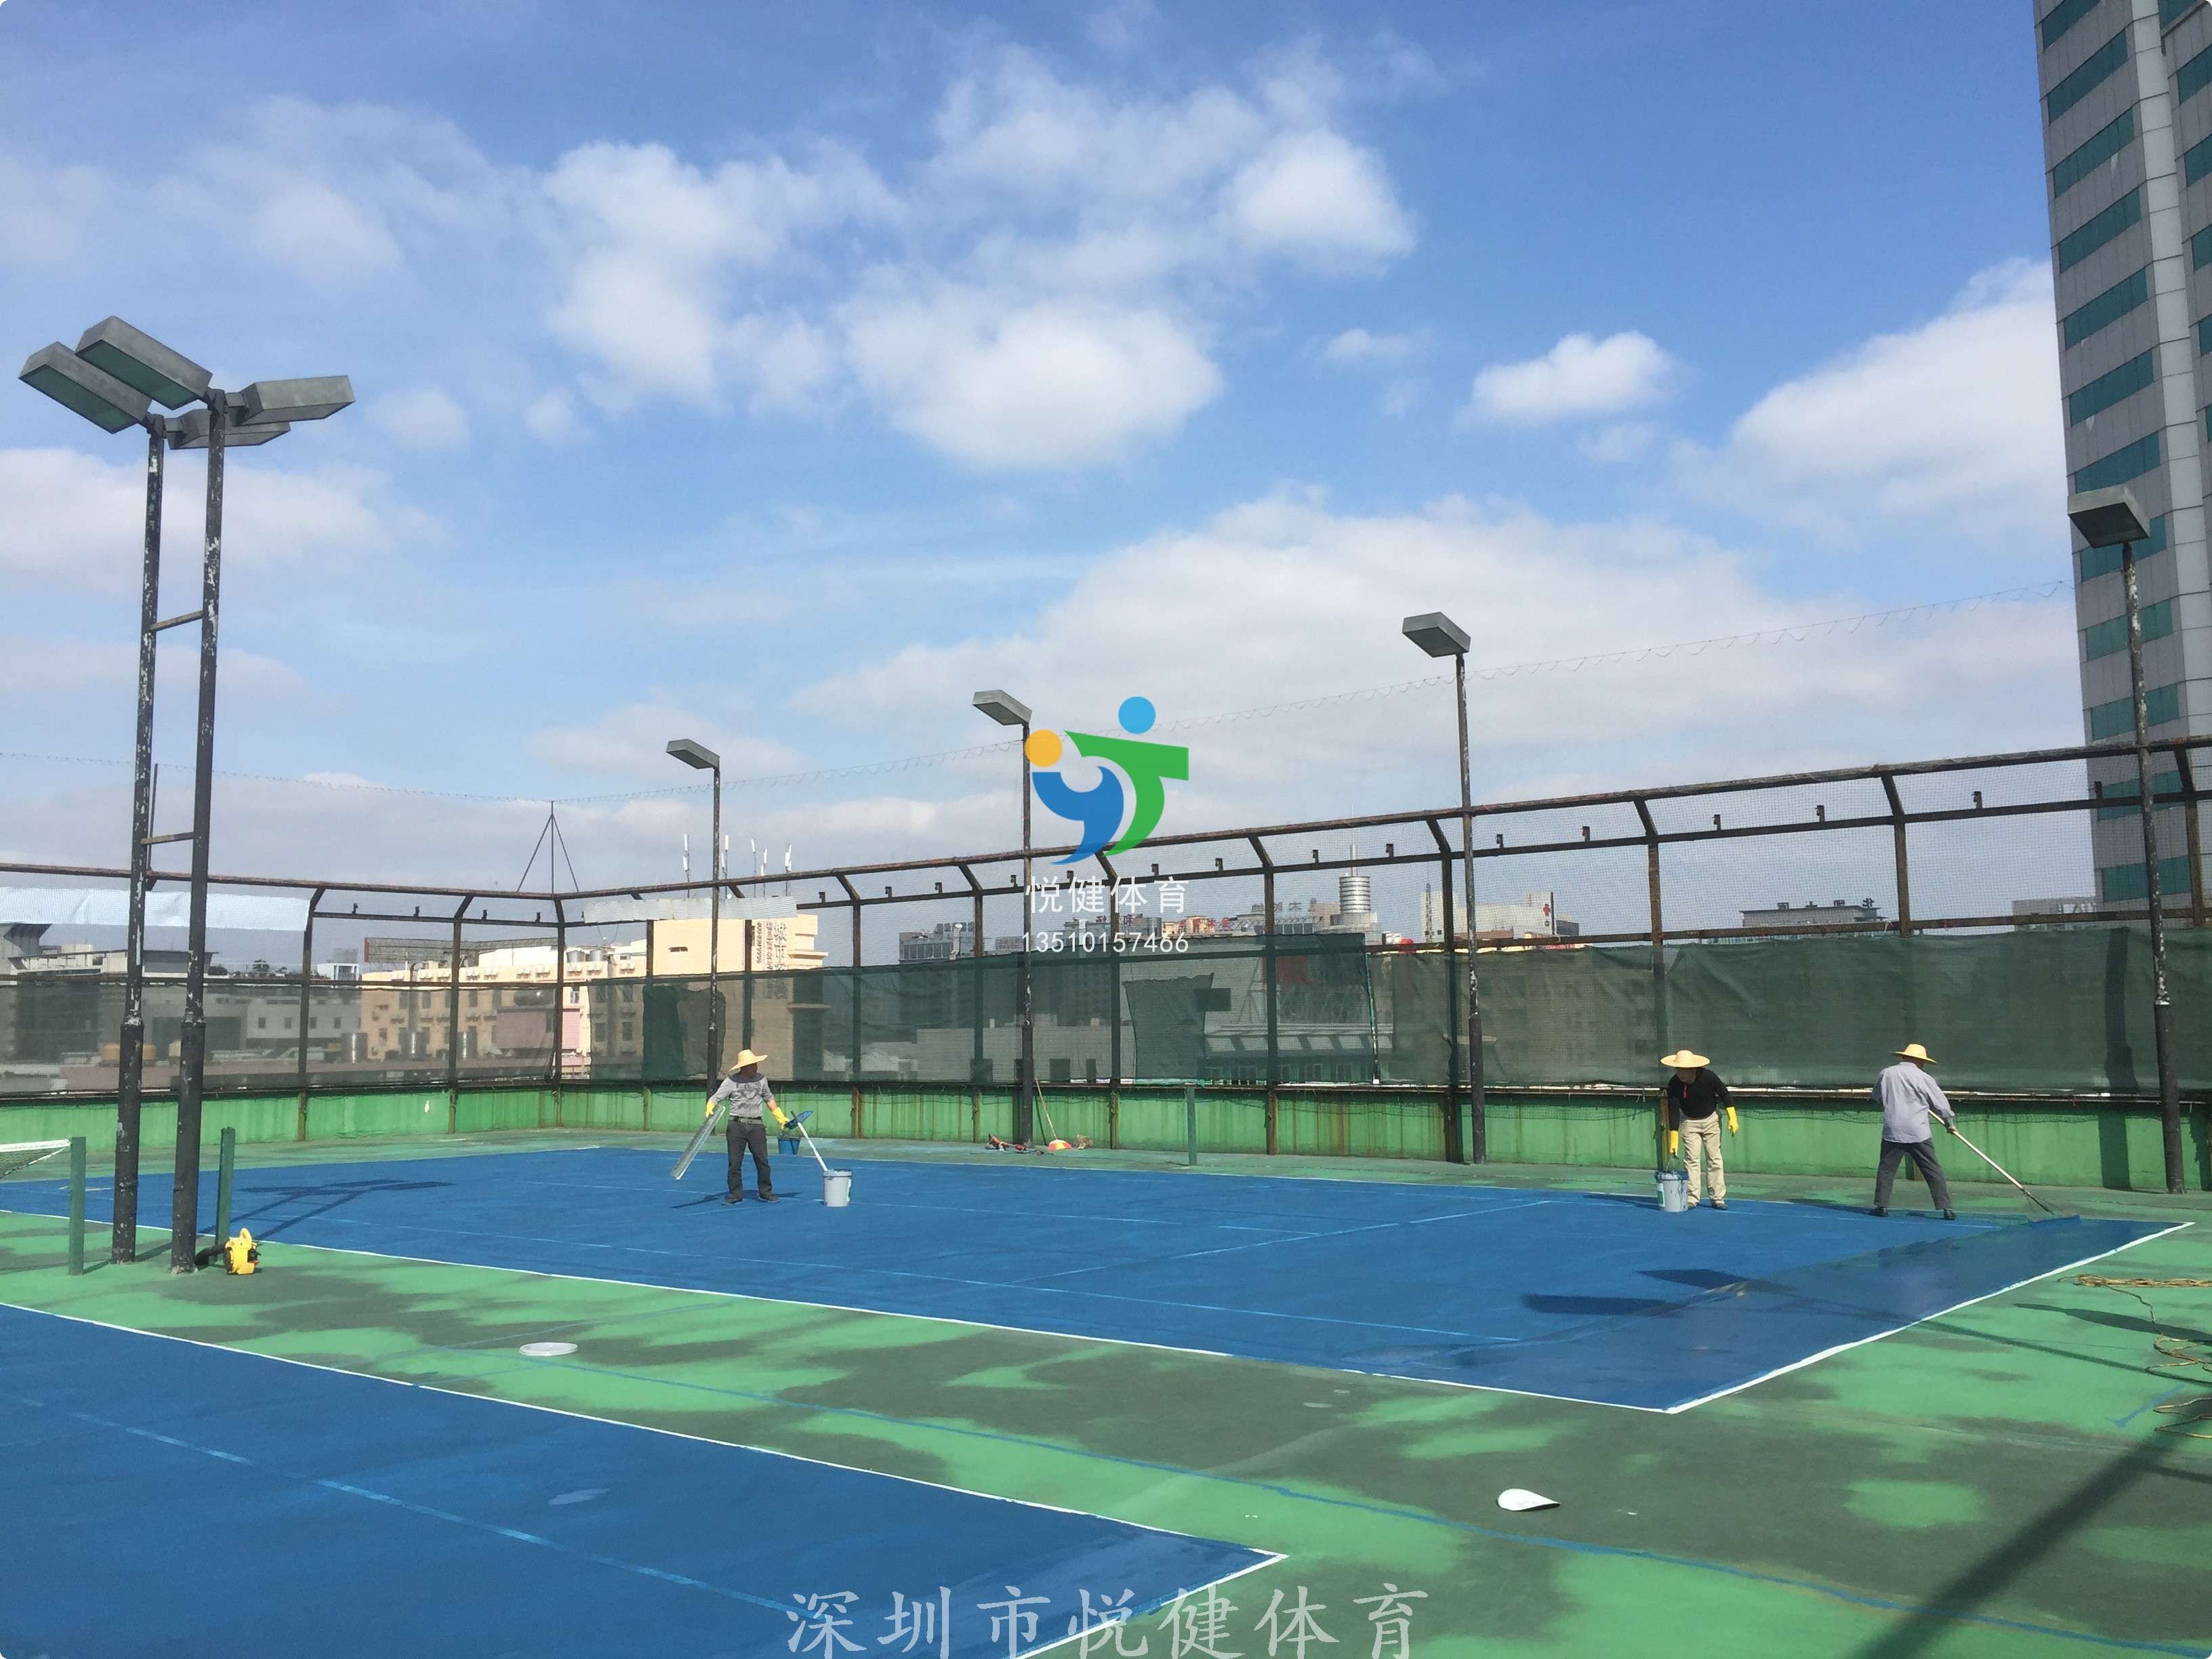 银城酒店,深圳市悦健体育,网球场建设,网球场翻新